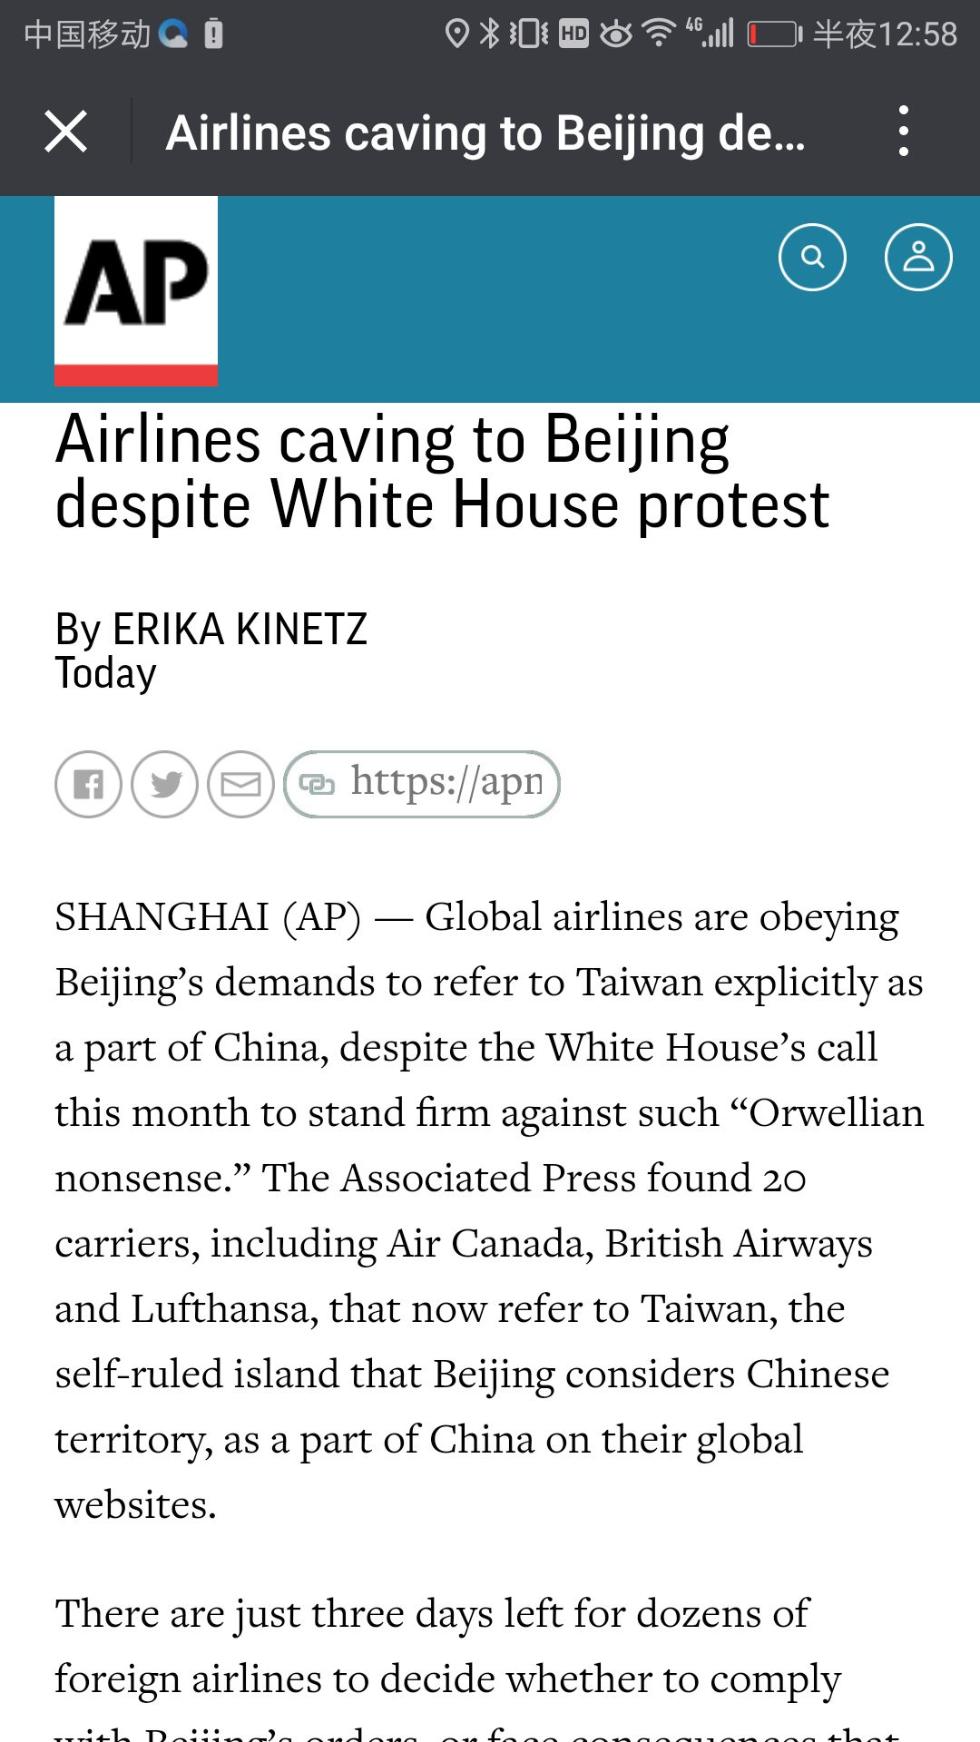 大限将至，这些外航仍不承认“台湾属于中国”